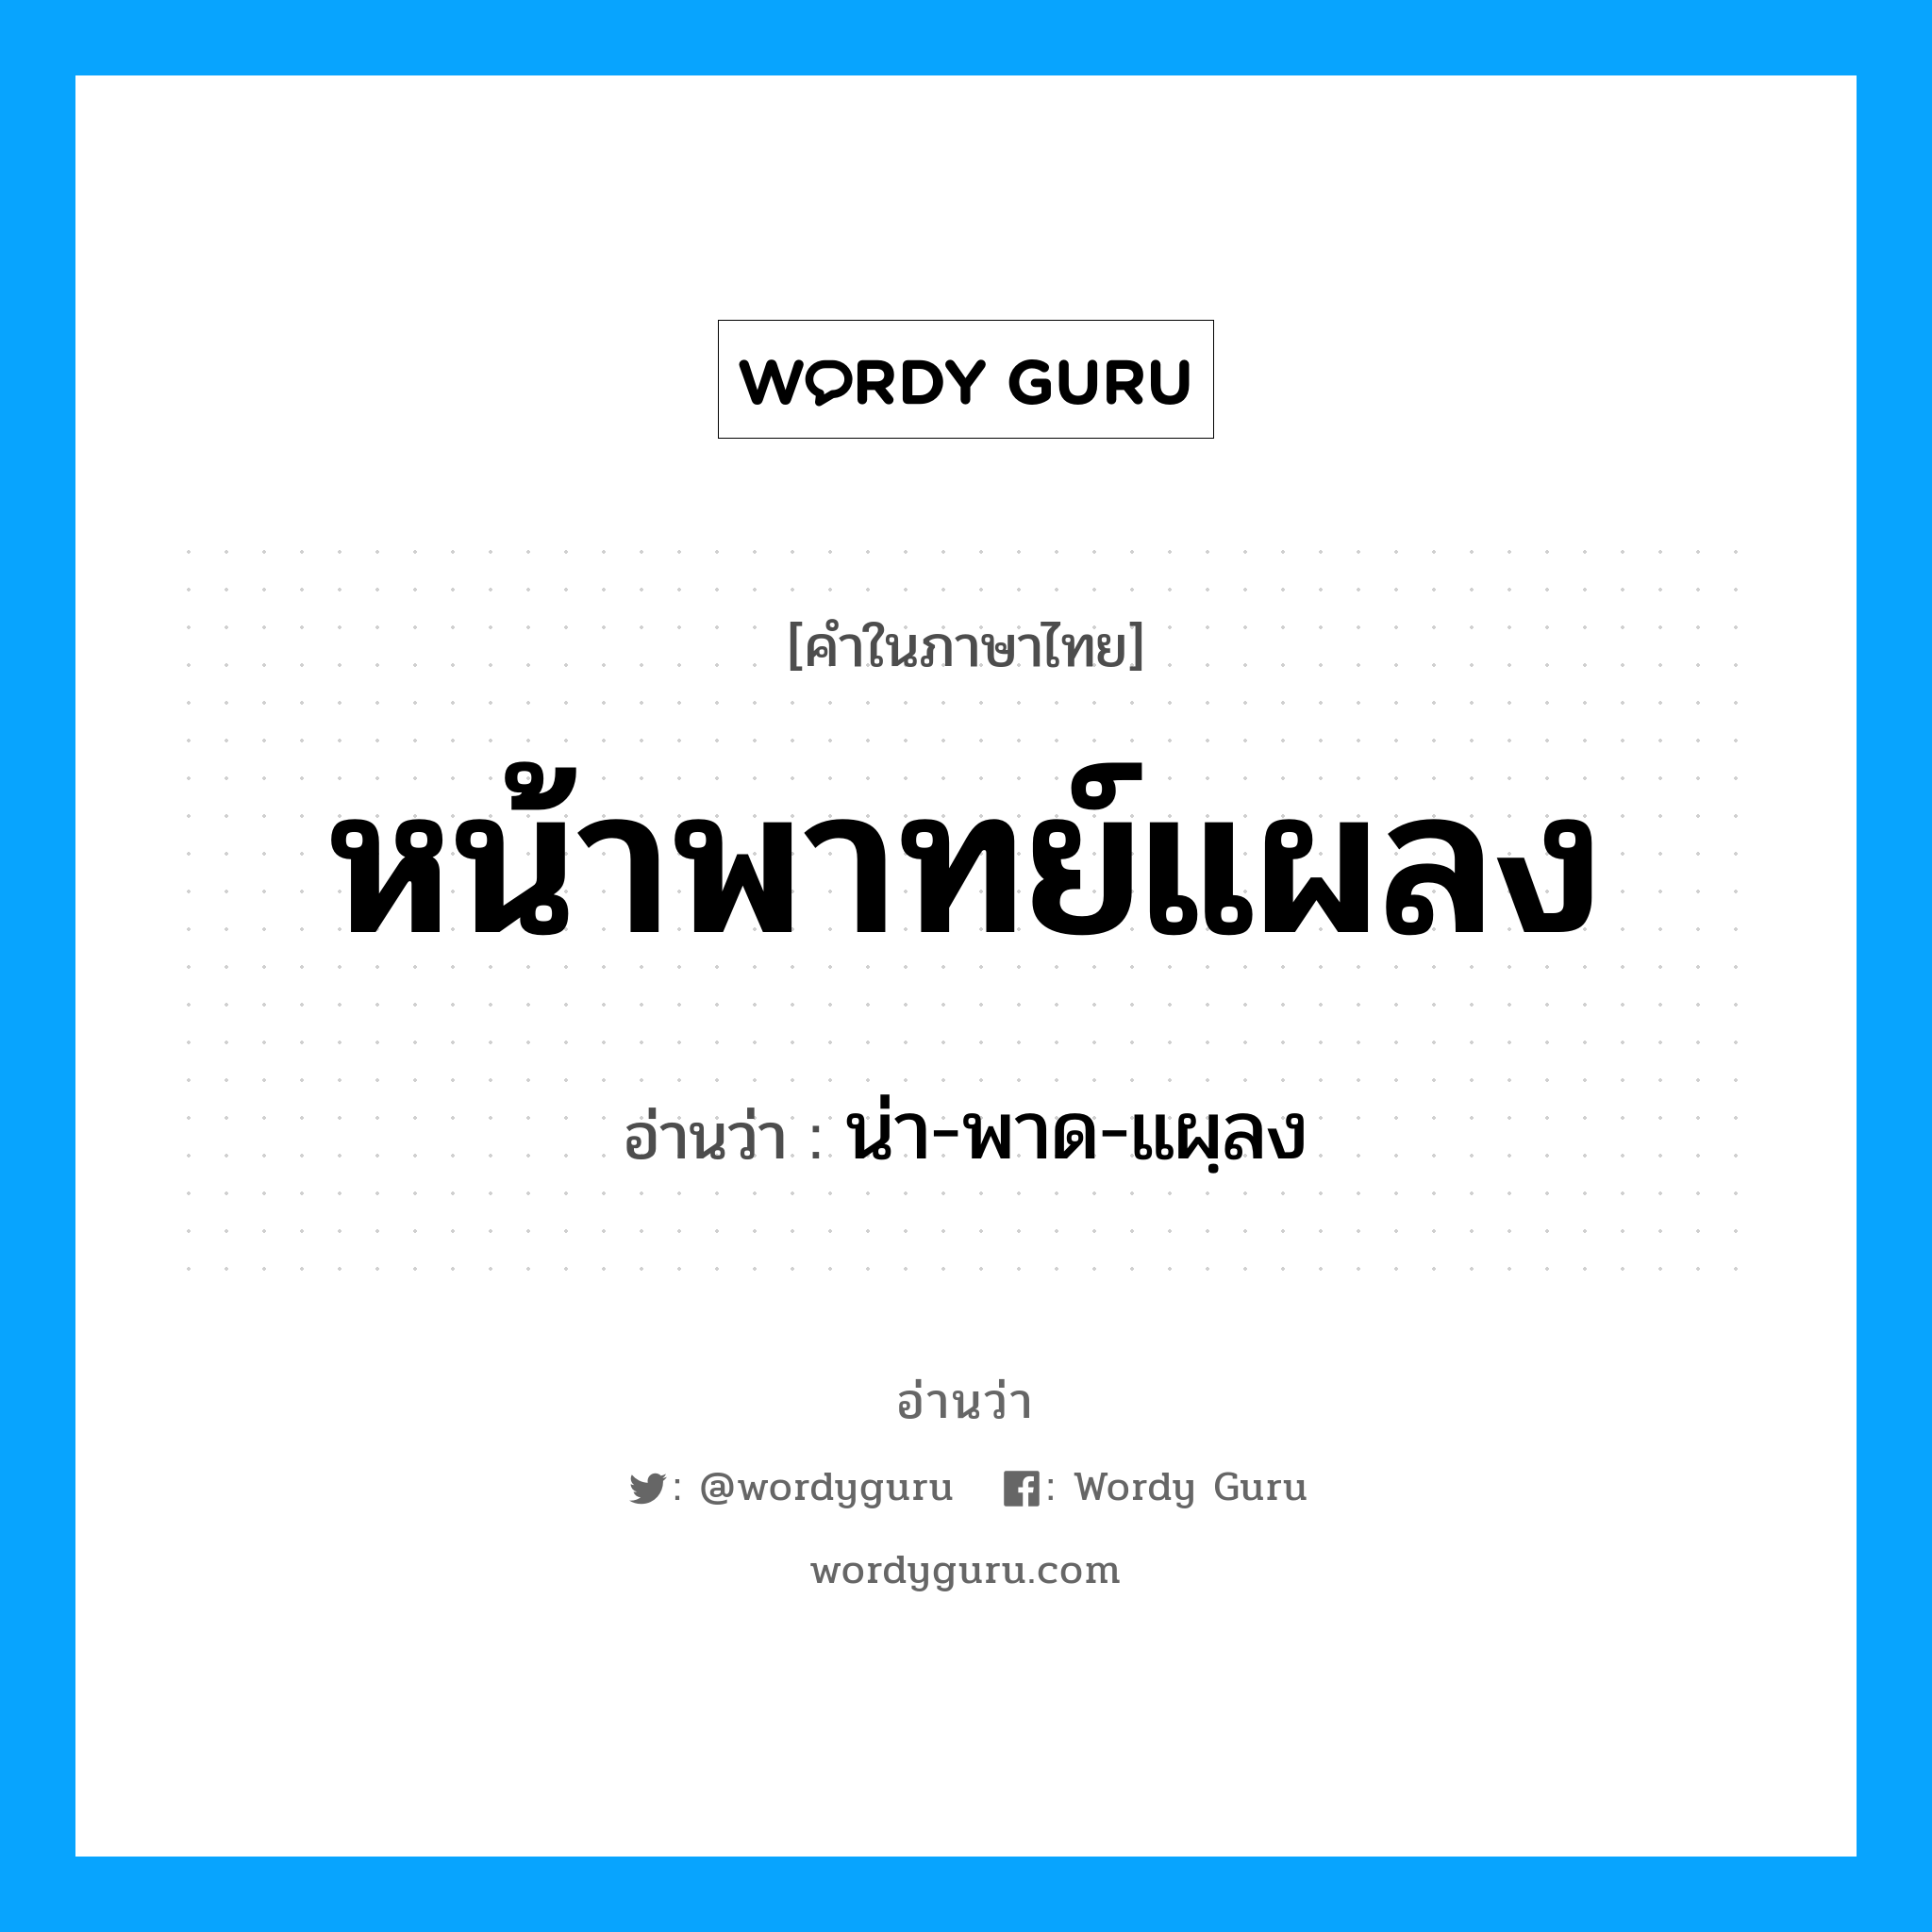 น่า-พาด-แผฺลง เป็นคำอ่านของคำไหน?, คำในภาษาไทย น่า-พาด-แผฺลง อ่านว่า หน้าพาทย์แผลง